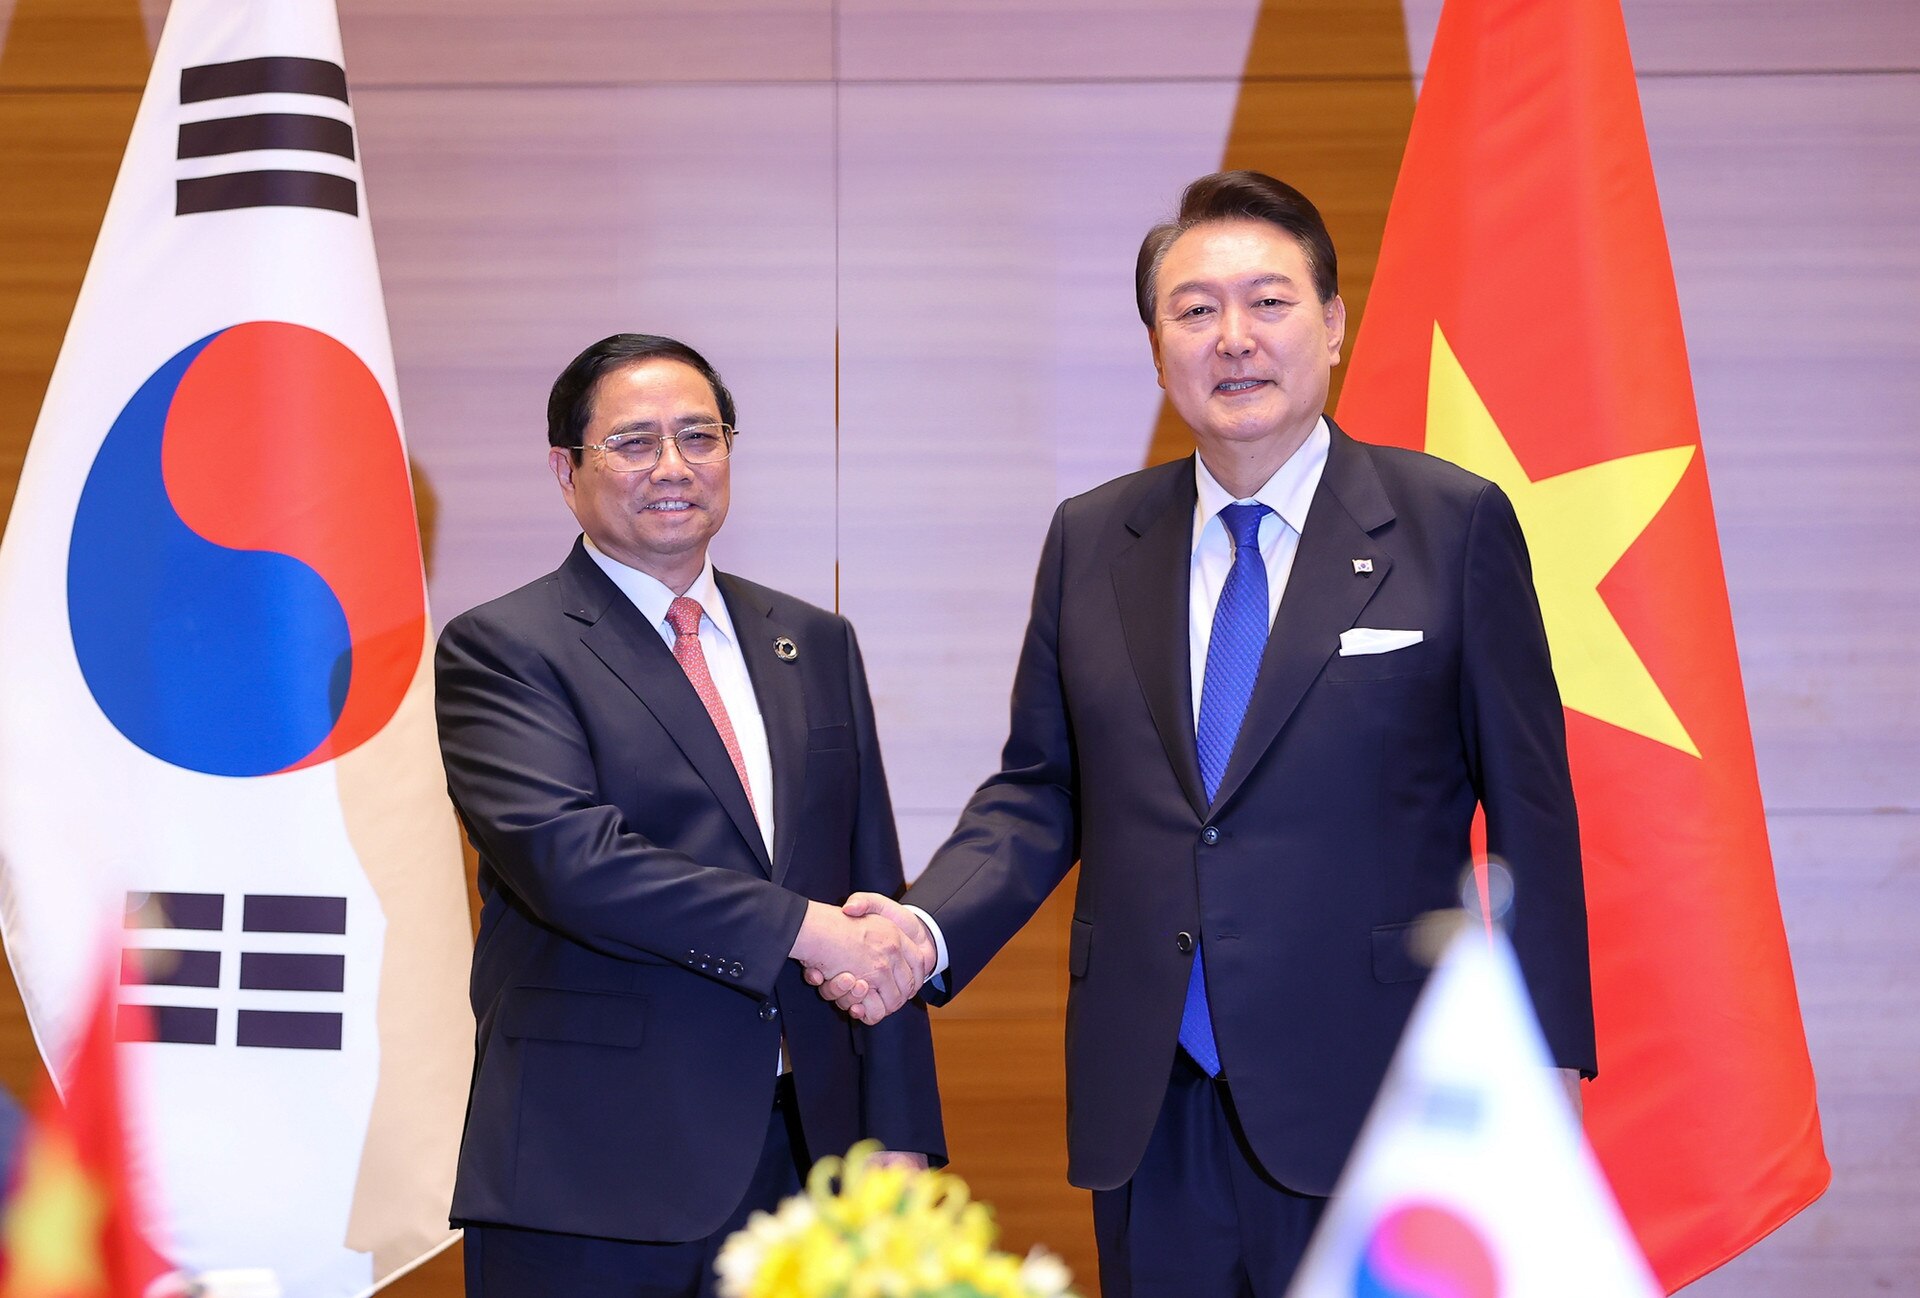 Премьер-министр Фам Минь Чин встречается с Президентом Республики Корея по случаю Открытого саммита G7 - Фото 1.